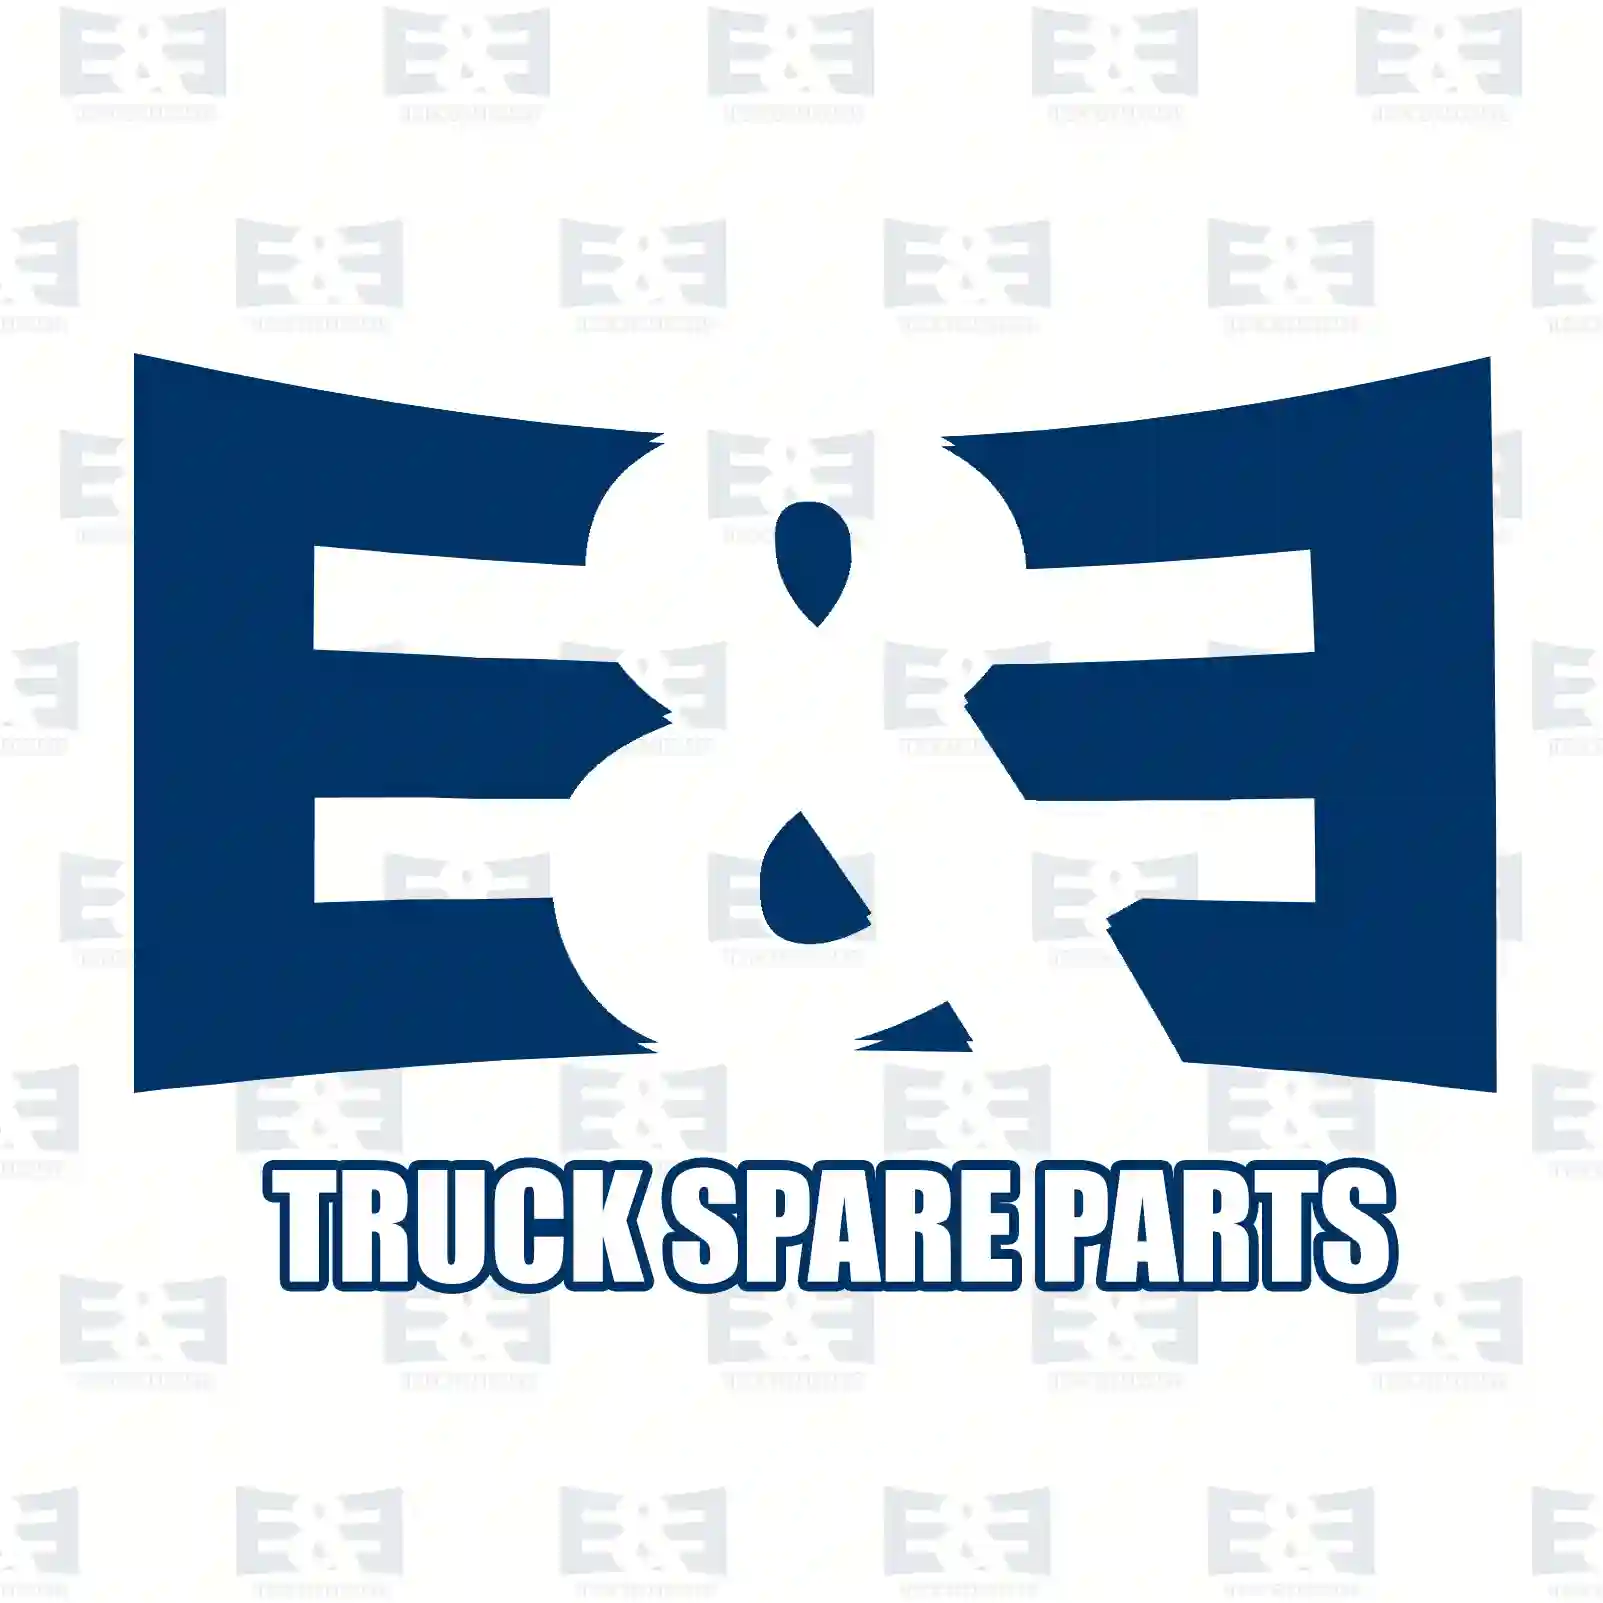 Cylinder head gasket kit, 2E2208418, 3529904601S1, 4570160221S1, 4601420080S1, 5410101621S1, 5410161720S1, 5410980480S1, 5419900501S2 ||  2E2208418 E&E Truck Spare Parts | Truck Spare Parts, Auotomotive Spare Parts Cylinder head gasket kit, 2E2208418, 3529904601S1, 4570160221S1, 4601420080S1, 5410101621S1, 5410161720S1, 5410980480S1, 5419900501S2 ||  2E2208418 E&E Truck Spare Parts | Truck Spare Parts, Auotomotive Spare Parts